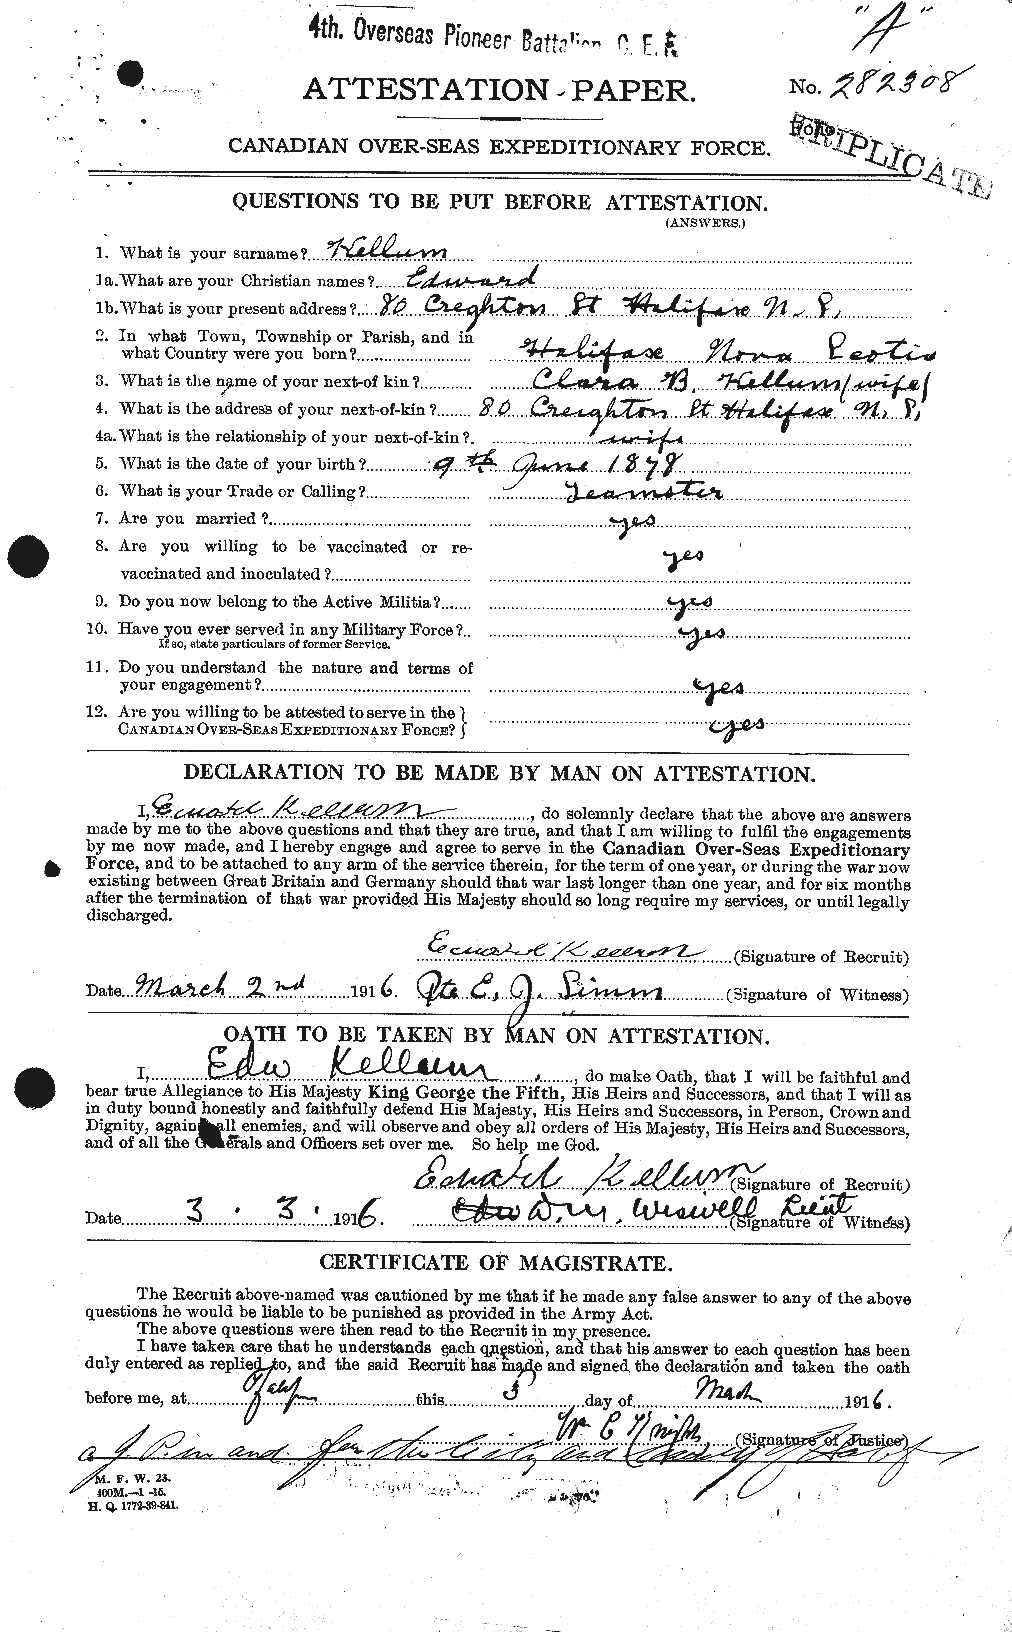 Dossiers du Personnel de la Première Guerre mondiale - CEC 429188a